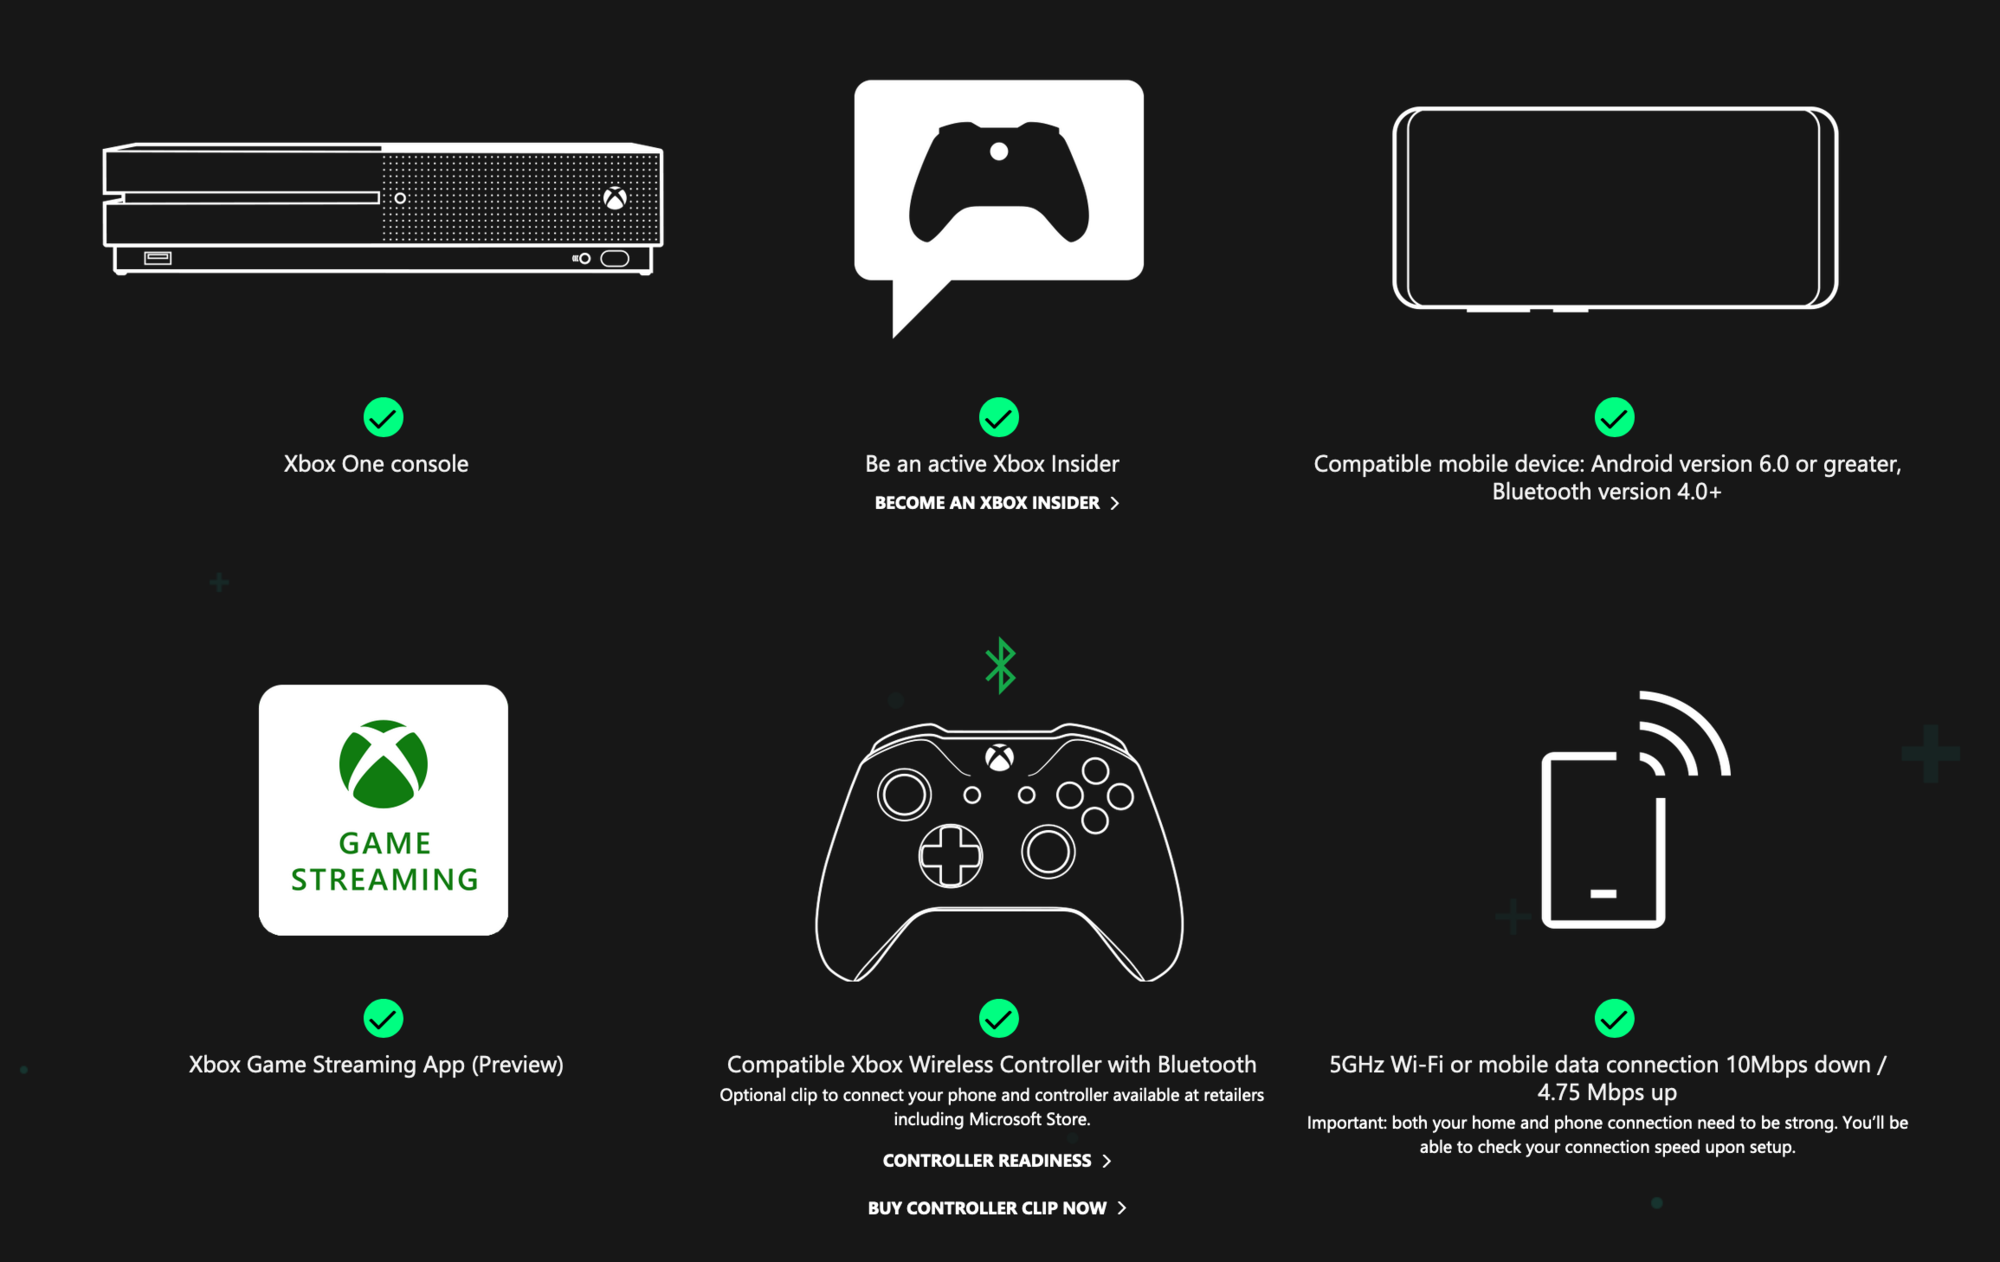 Console connect. Консоль 360 Xbox с connect. Как включить консоль Xbox 360. Подключить к Xbox наушники блютуз. Xbox one s консоль Коннект.